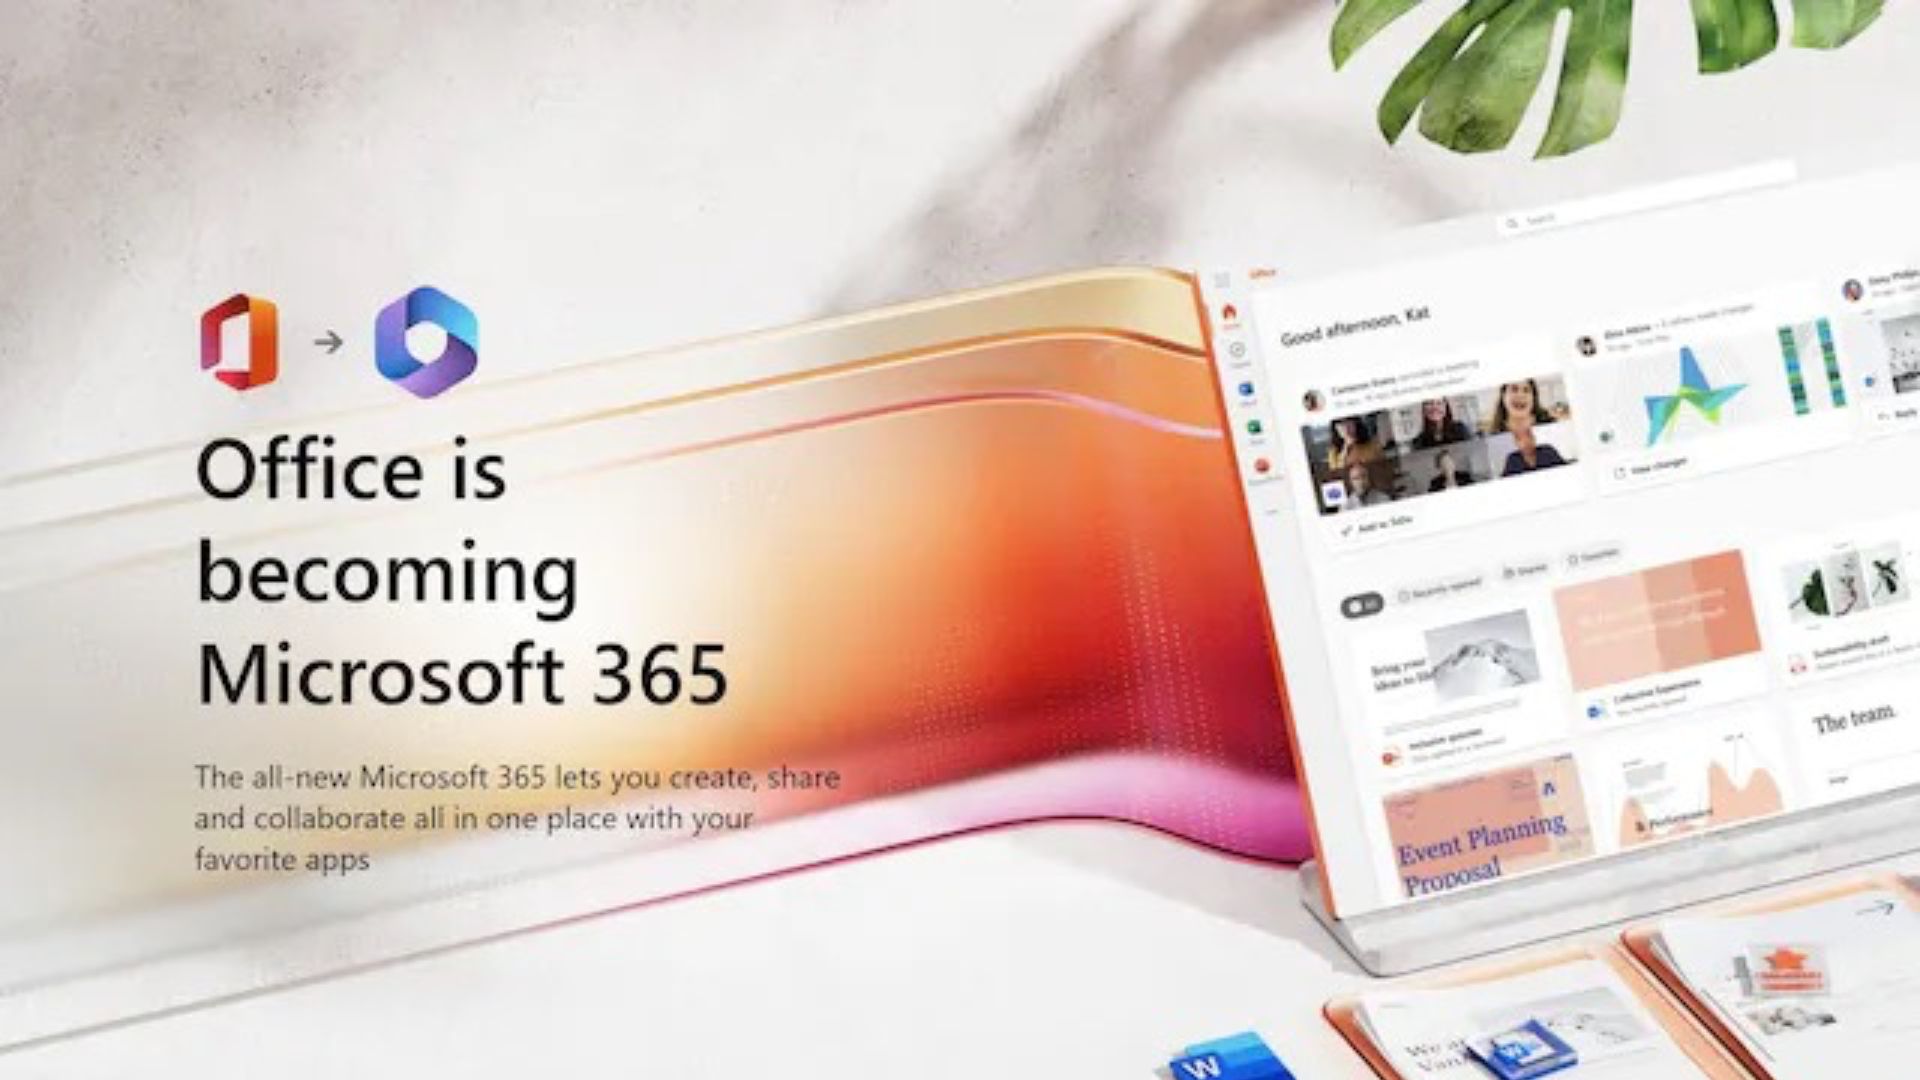 Microsoft Office, 30 yılı aşkın süredir markanın en büyük revizyonunda ‘Microsoft 365’ olacak